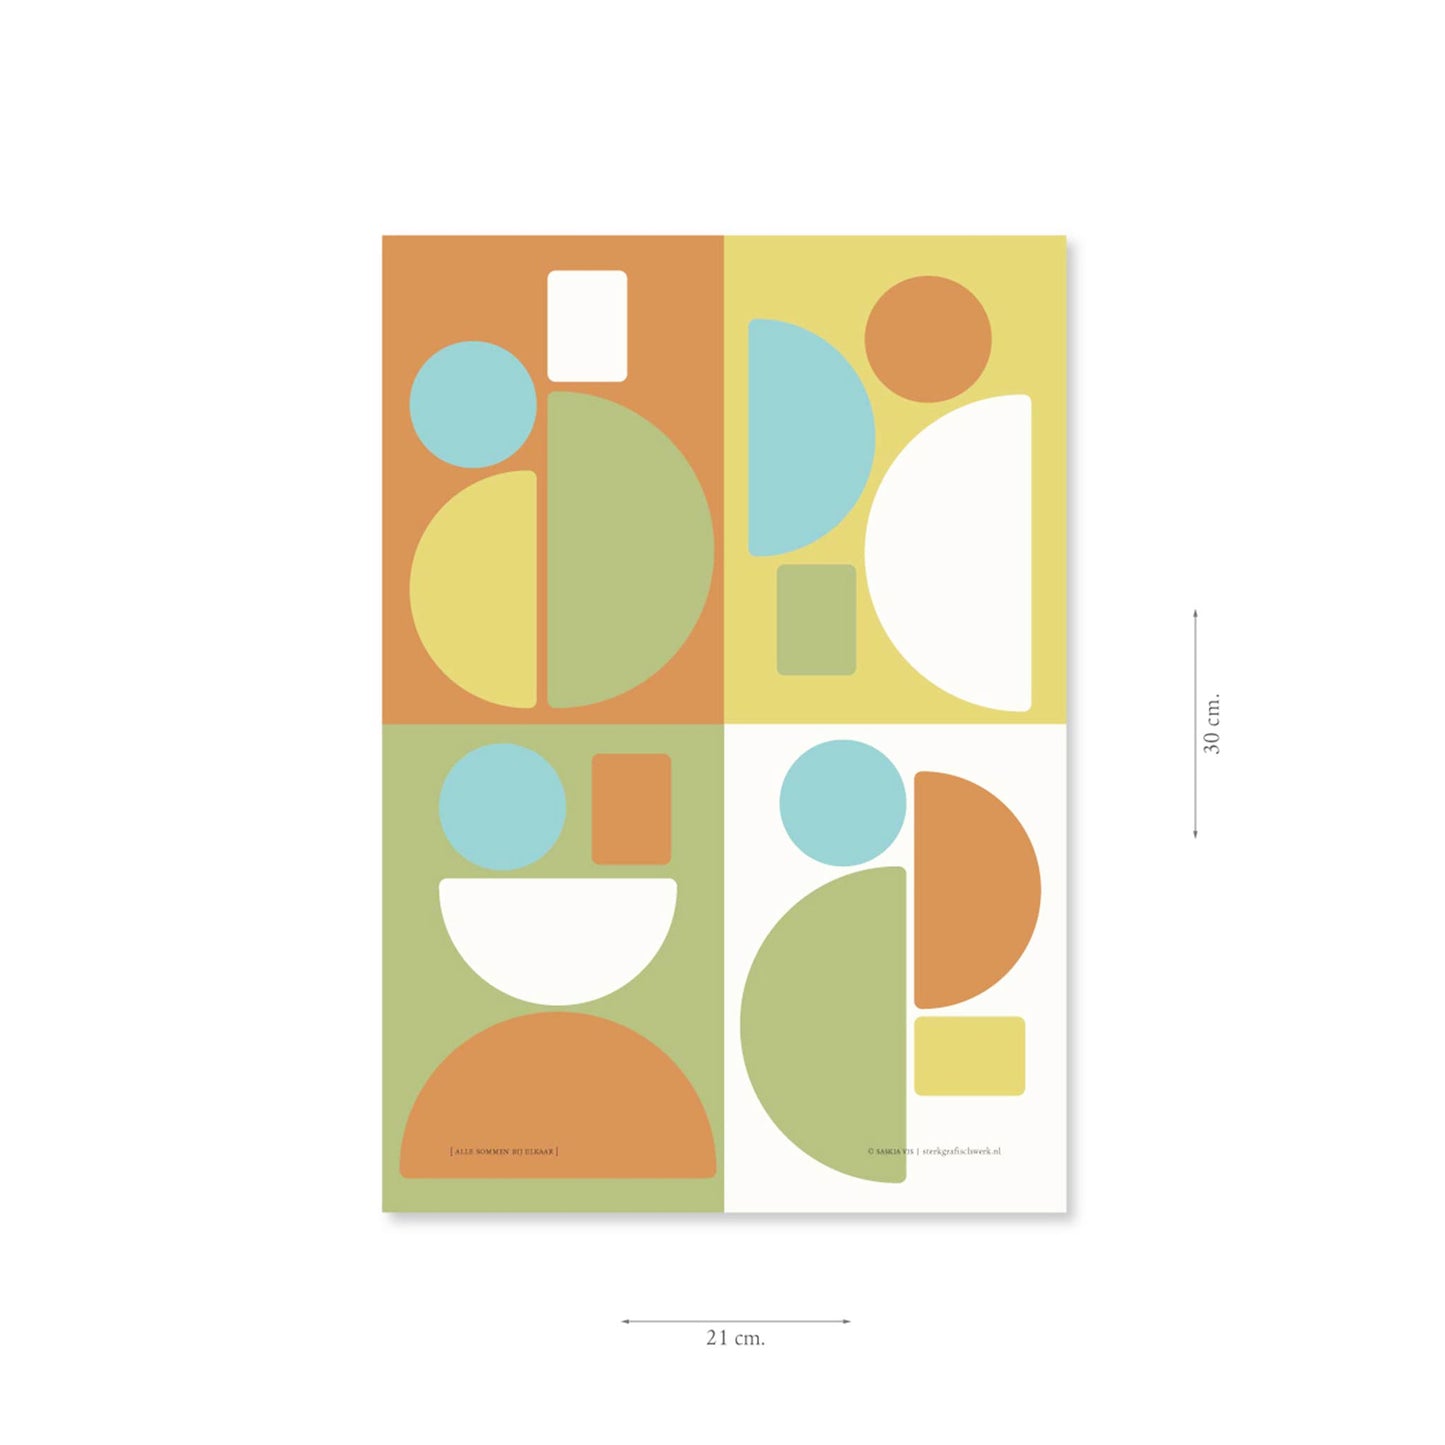 Productafbeelding poster "alle sommen bij elkaar" met aanduiding van het formaat erop weergegeven 21 x 30 cm